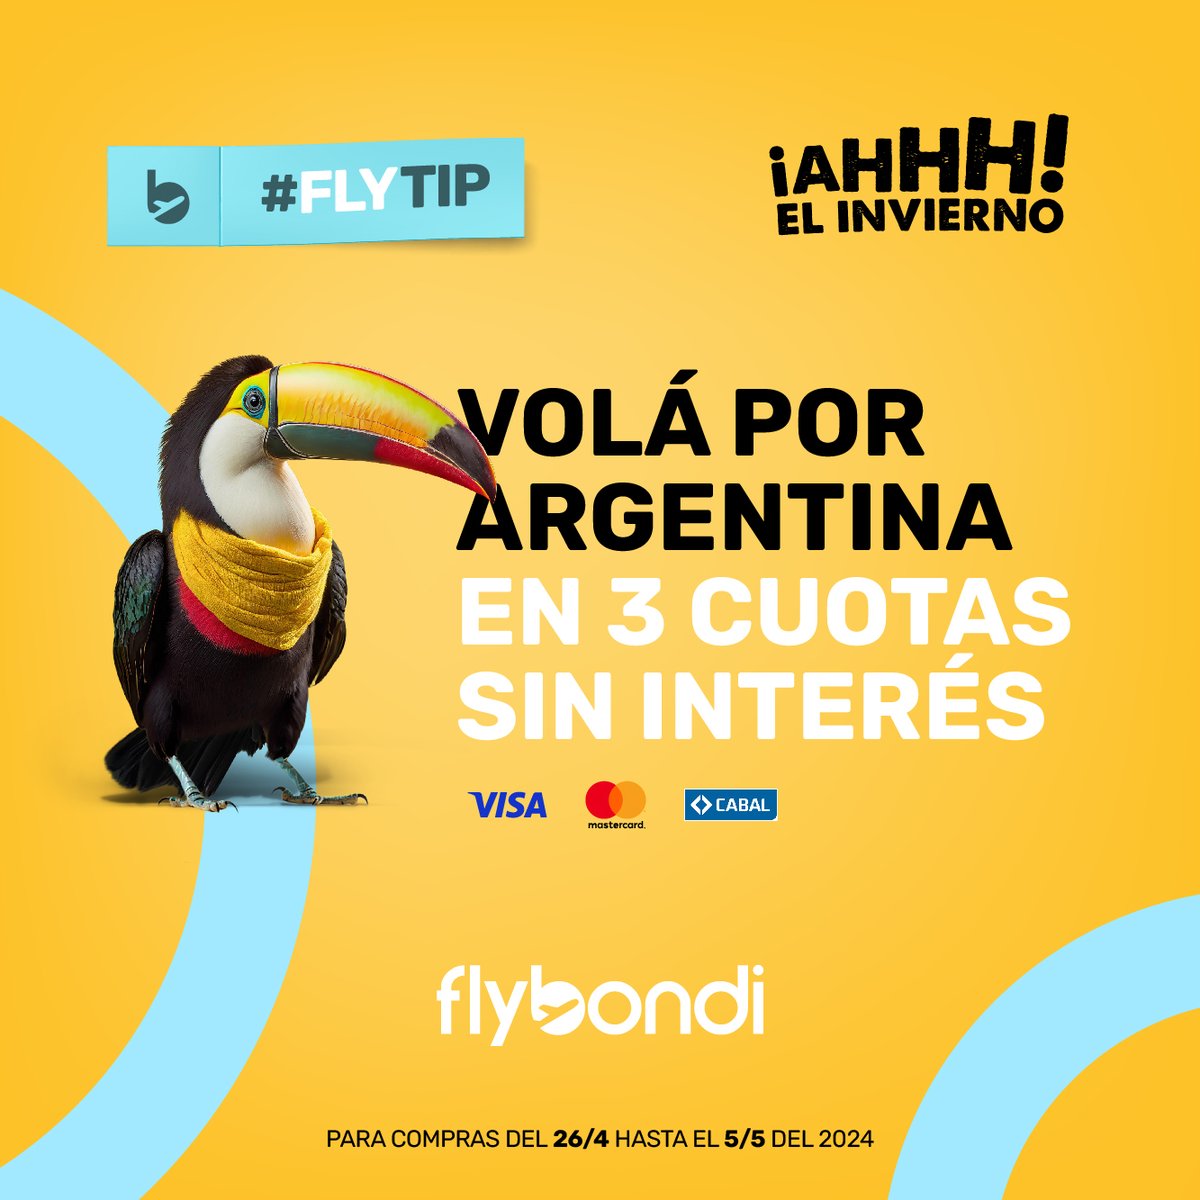 #FlyTip del día: comprá ahora y volá en 3 cuotas sin interés 💛 Hacé click acá 👉🏻 bit.ly/3kl0aFn y sumate a #LaLibertadDeVolar ✨✈️ #Flybondi #Cuotas #CuotasSinInteres